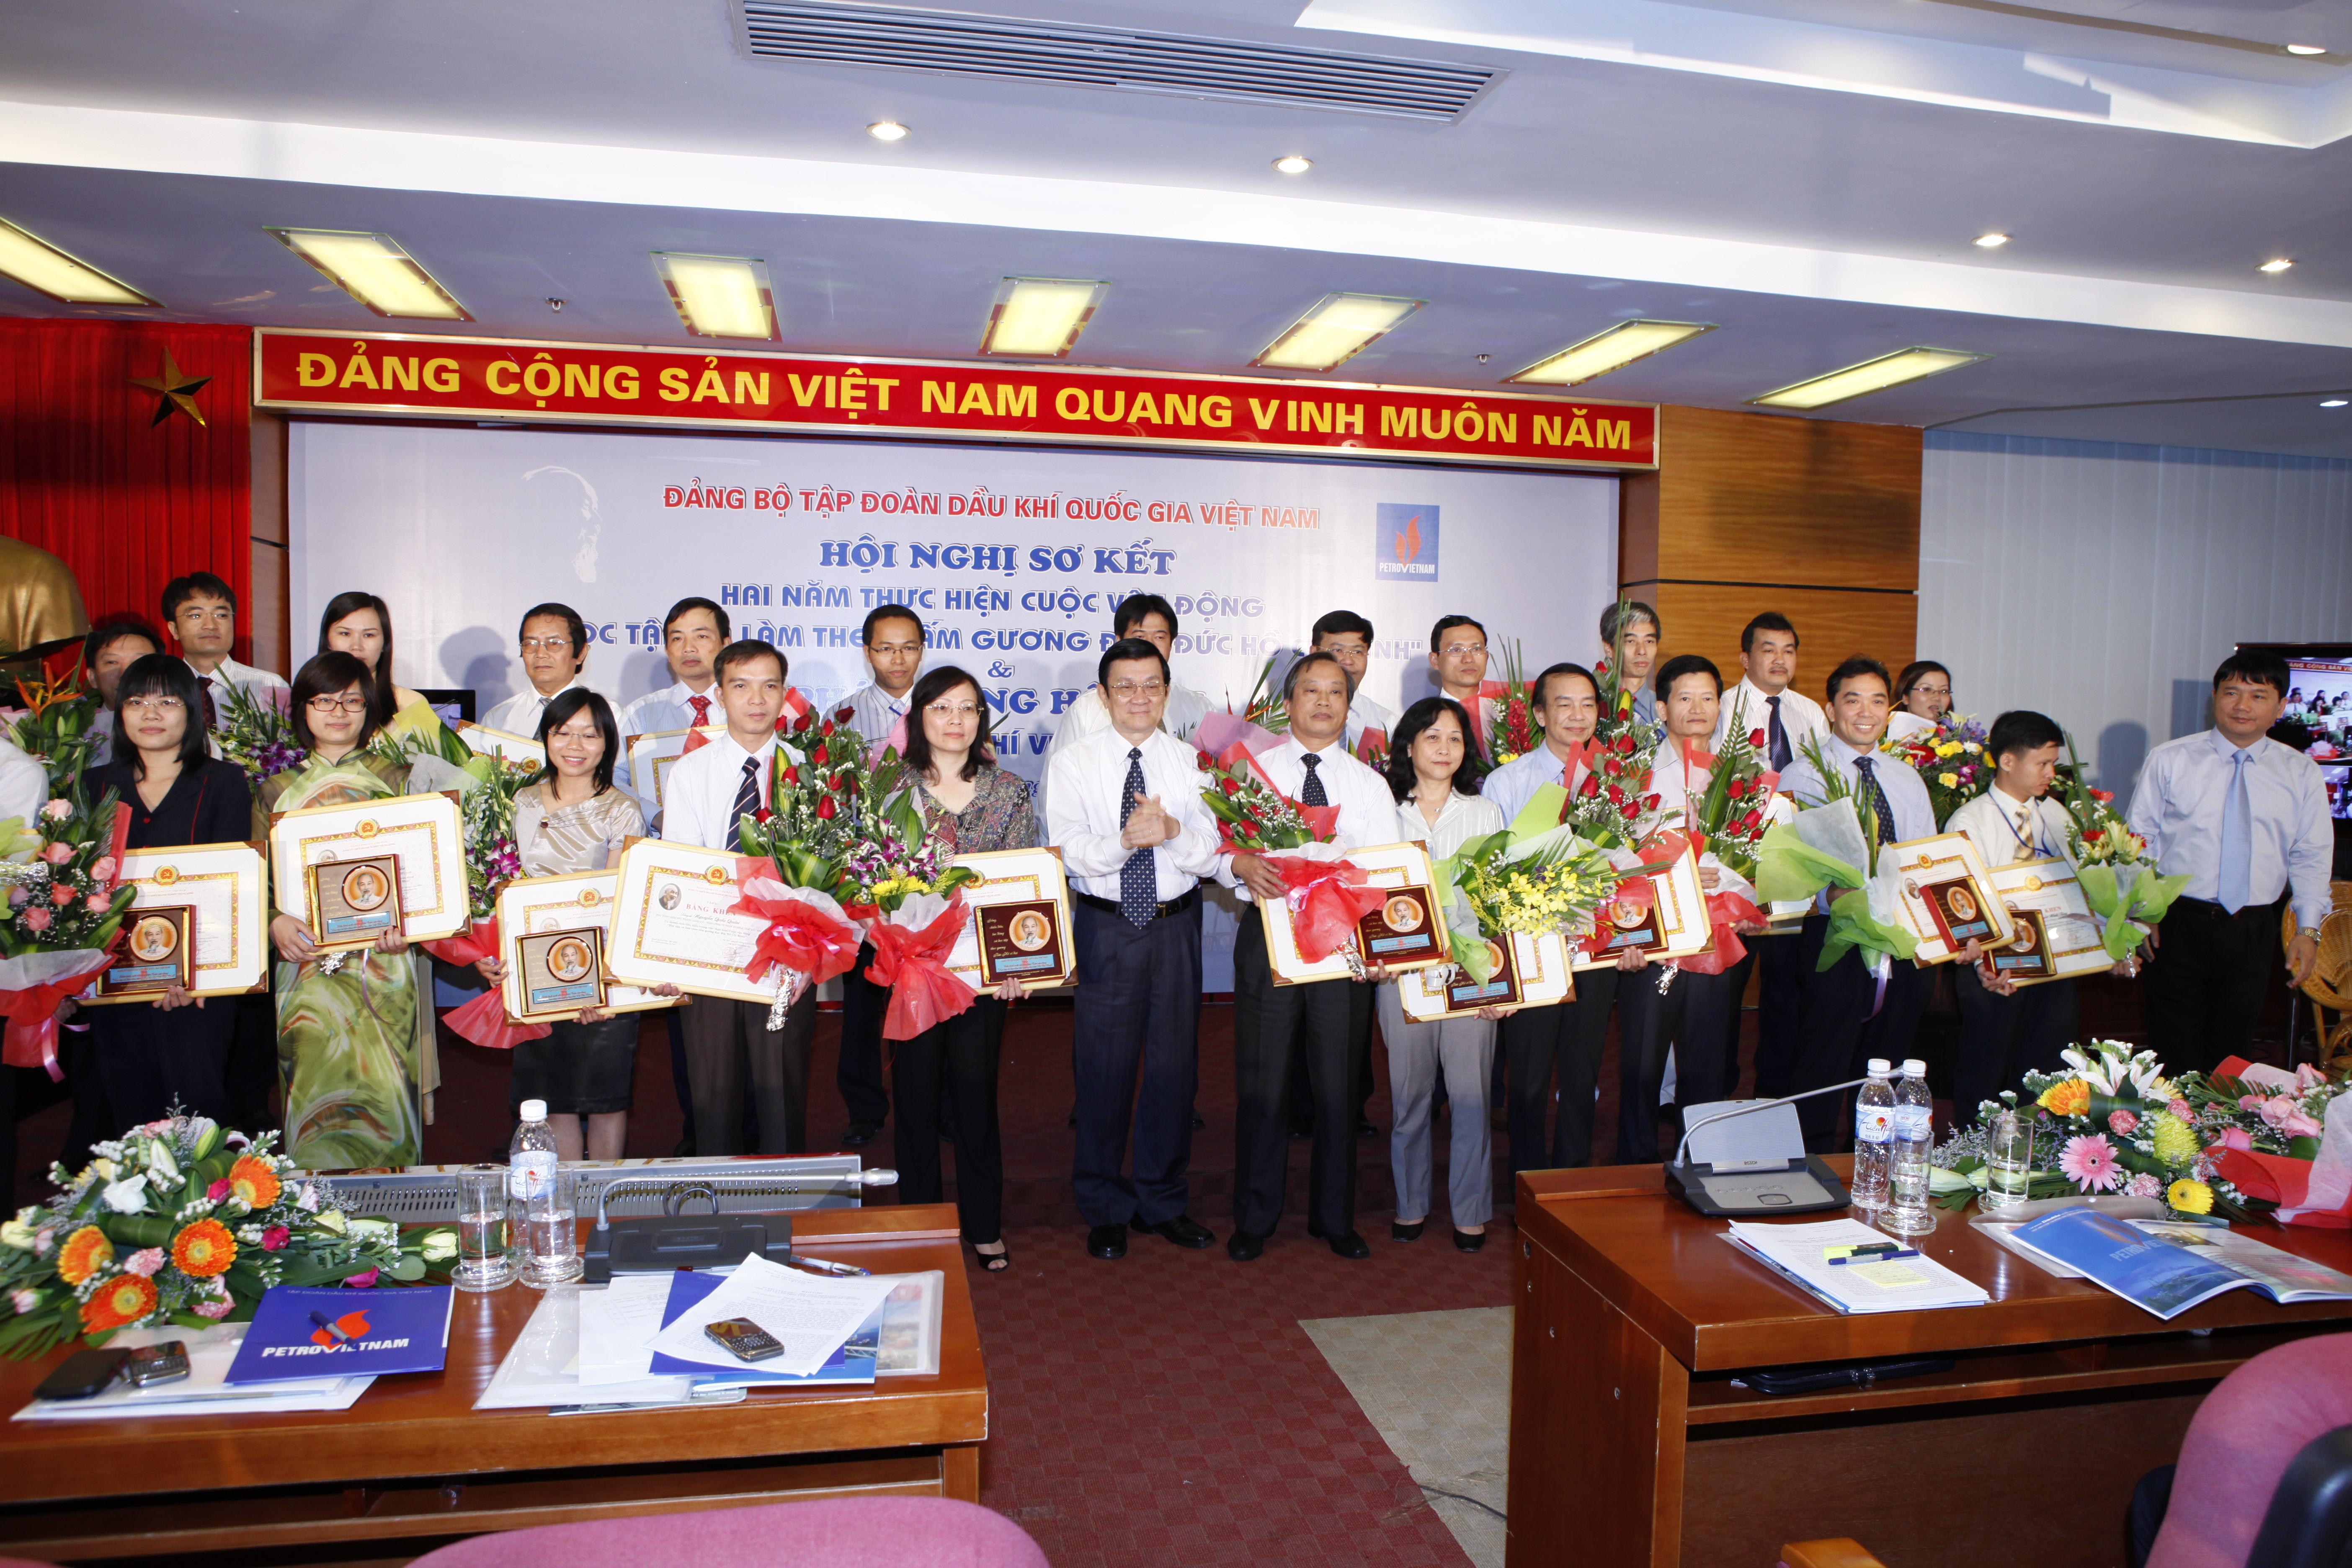 Đảng bộ Tập đoàn Dầu khí Quốc gia Việt Nam: Tiếp tục triển khai có hiệu quả việc học tập và làm theo tấm gương đạo đức Hồ Chí Minh